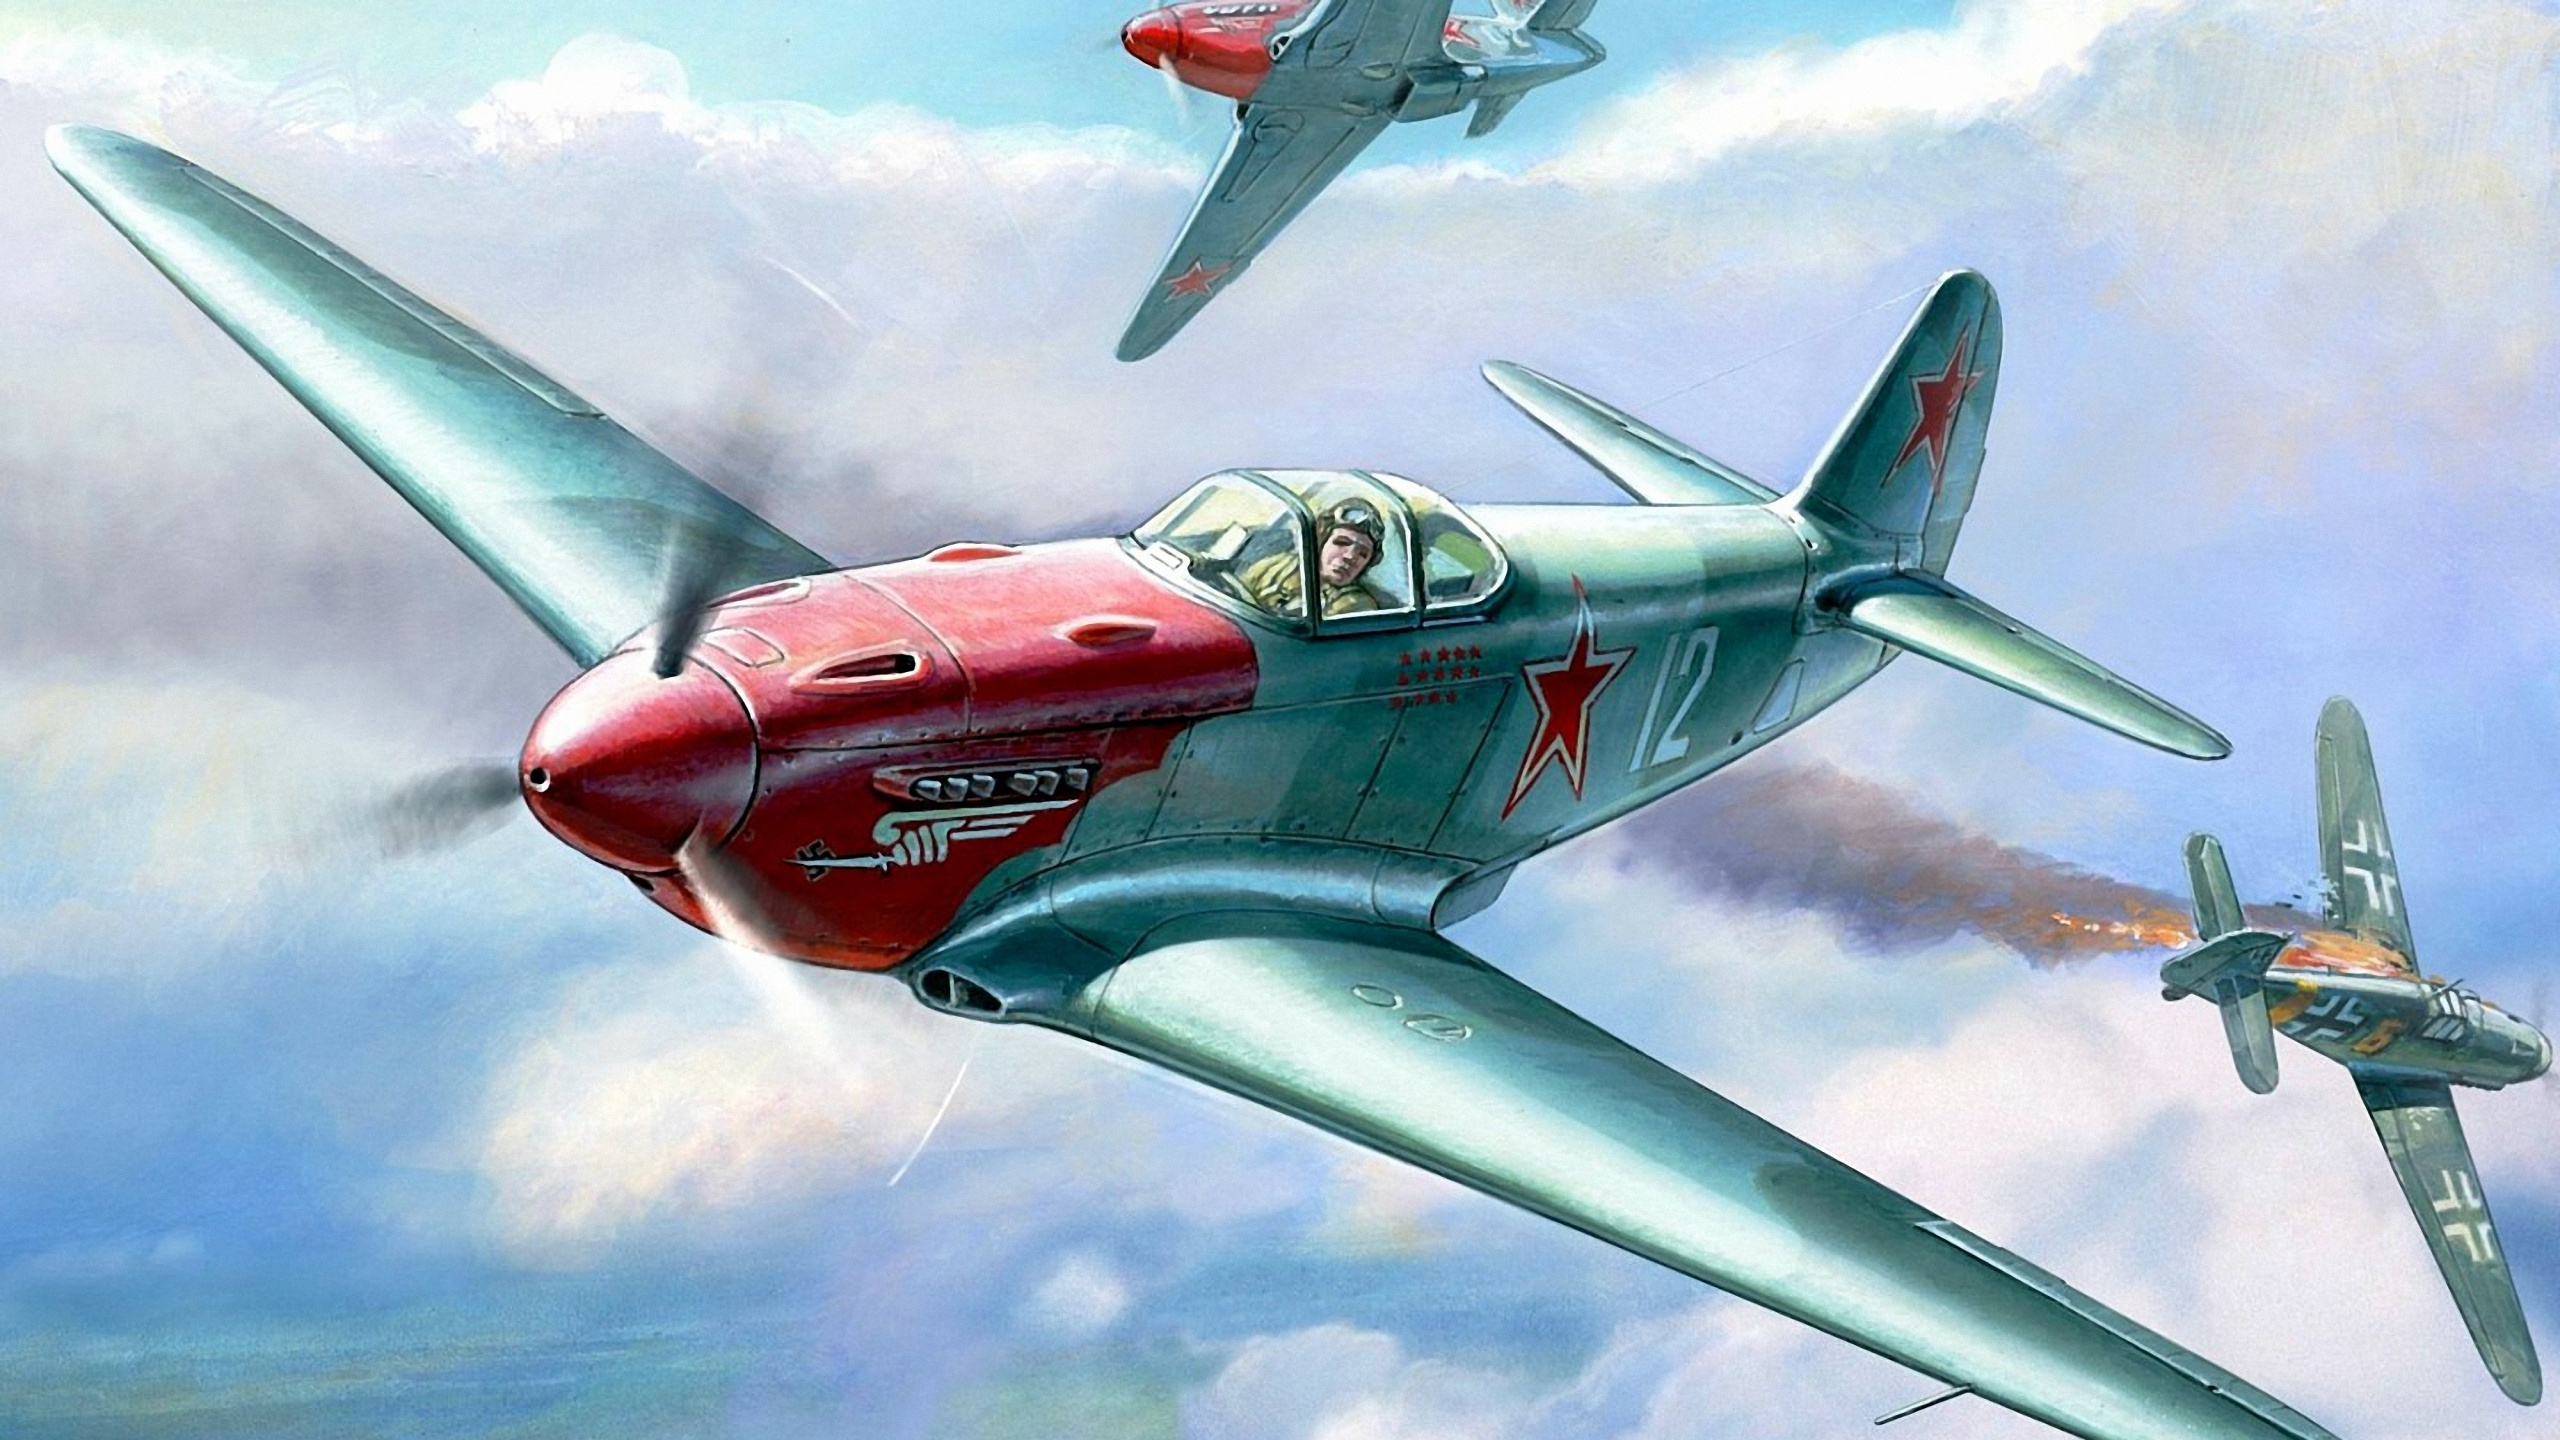 航空, 螺旋桨, 军用飞机, 雅科夫列夫牦牛9, 飞机发动机 壁纸 2560x1440 允许